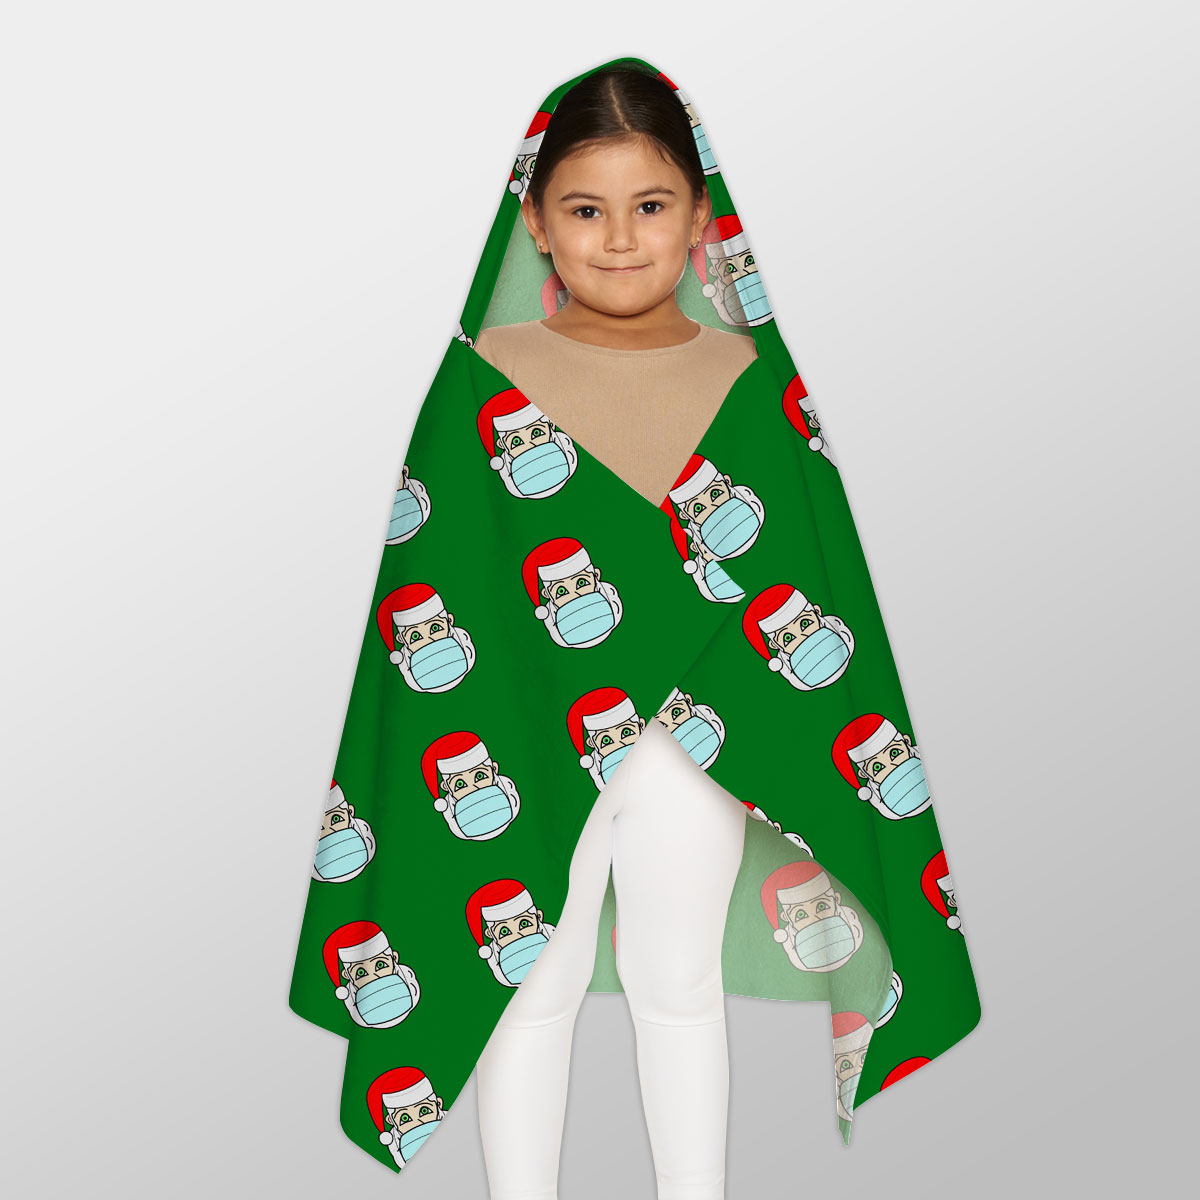 Santa Claus, Christmas Santa, Funny Secret Santa Gifts Youth Hooded Towel